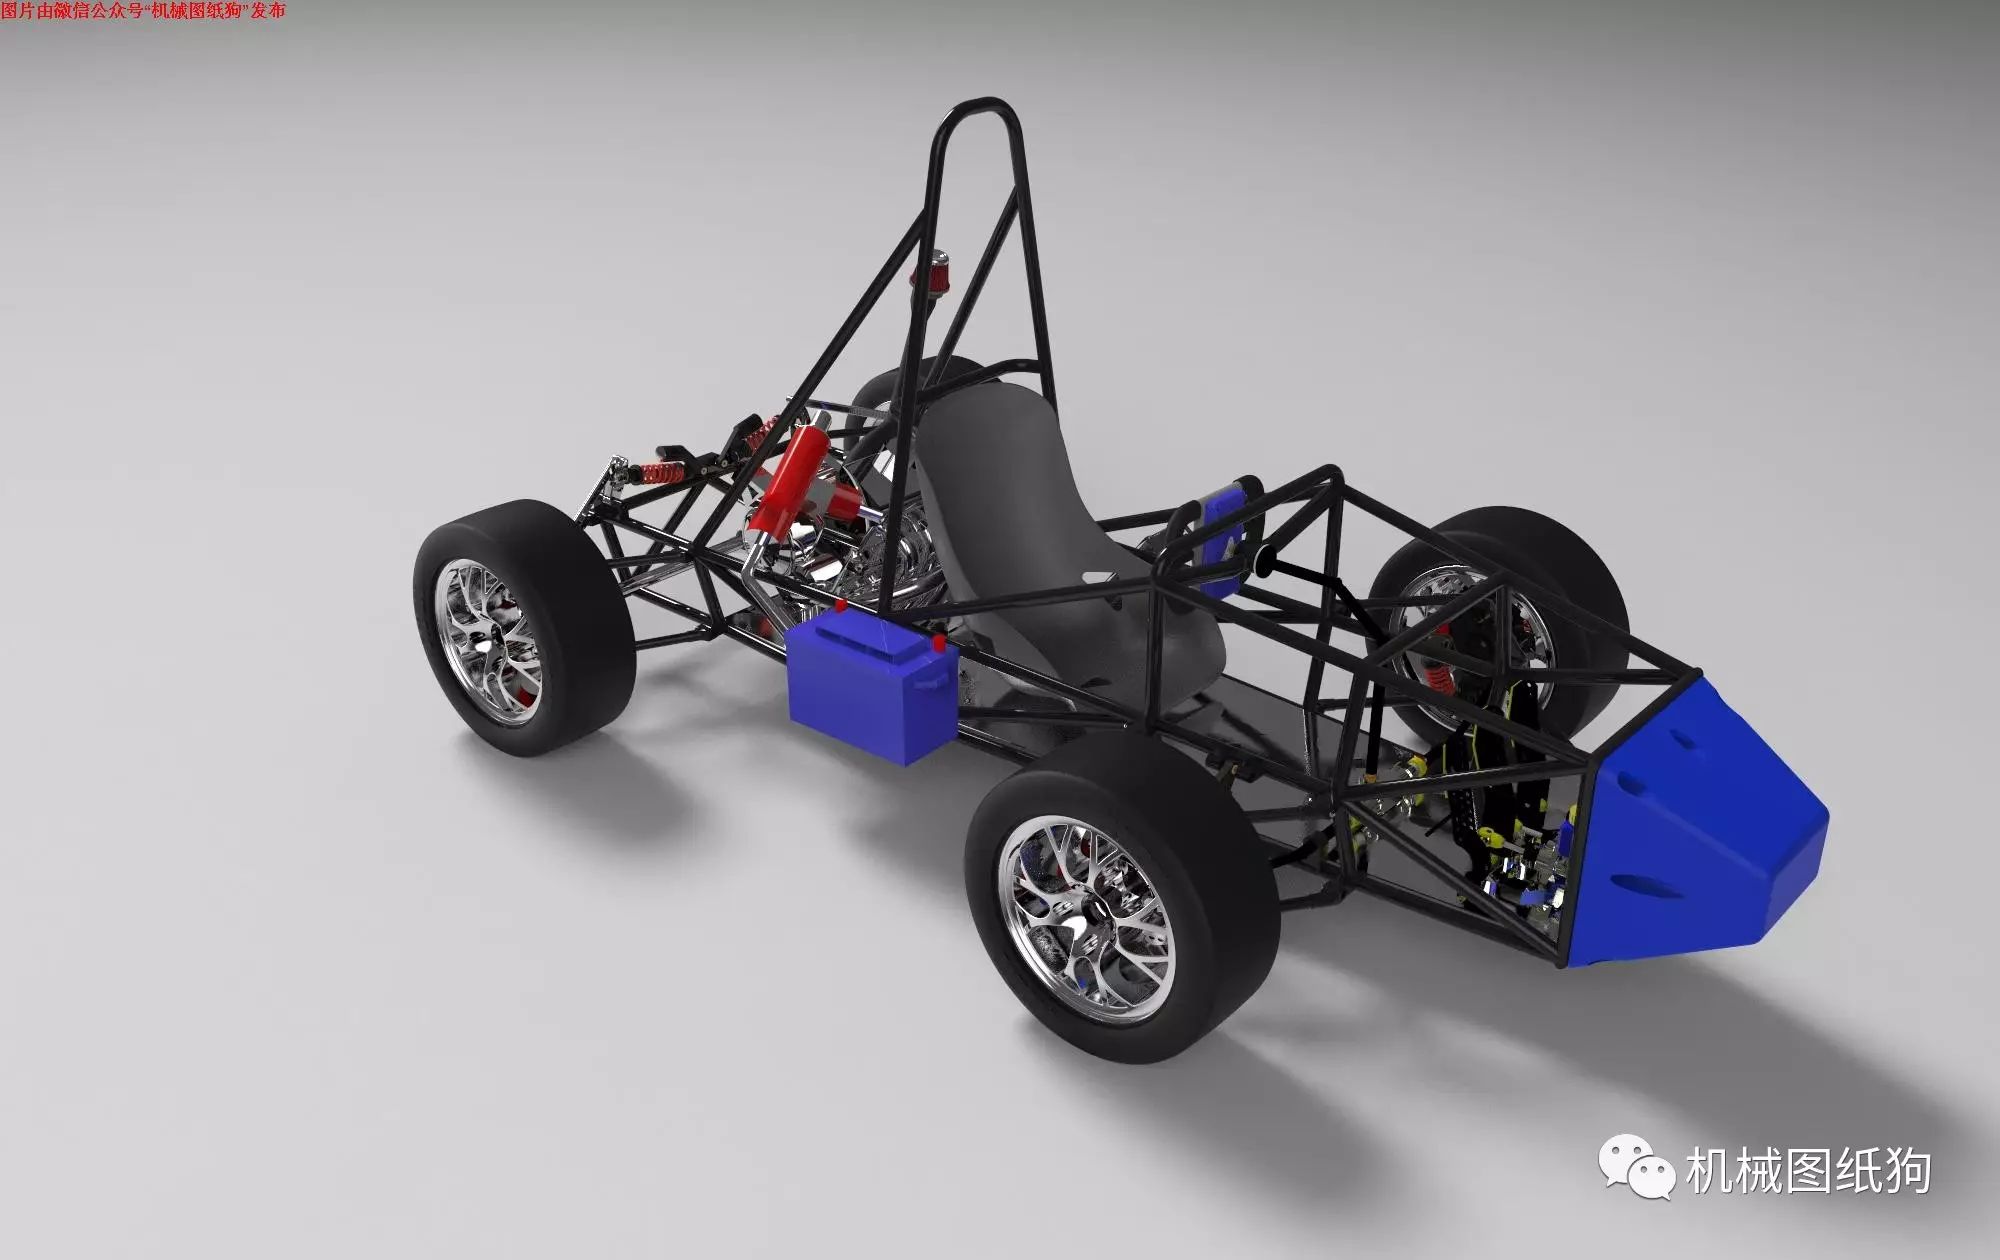 【卡丁赛车】三轮单座卡丁车三维建模图纸 SolidEdge设计 附STEP格式_SolidWorks-仿真秀干货文章